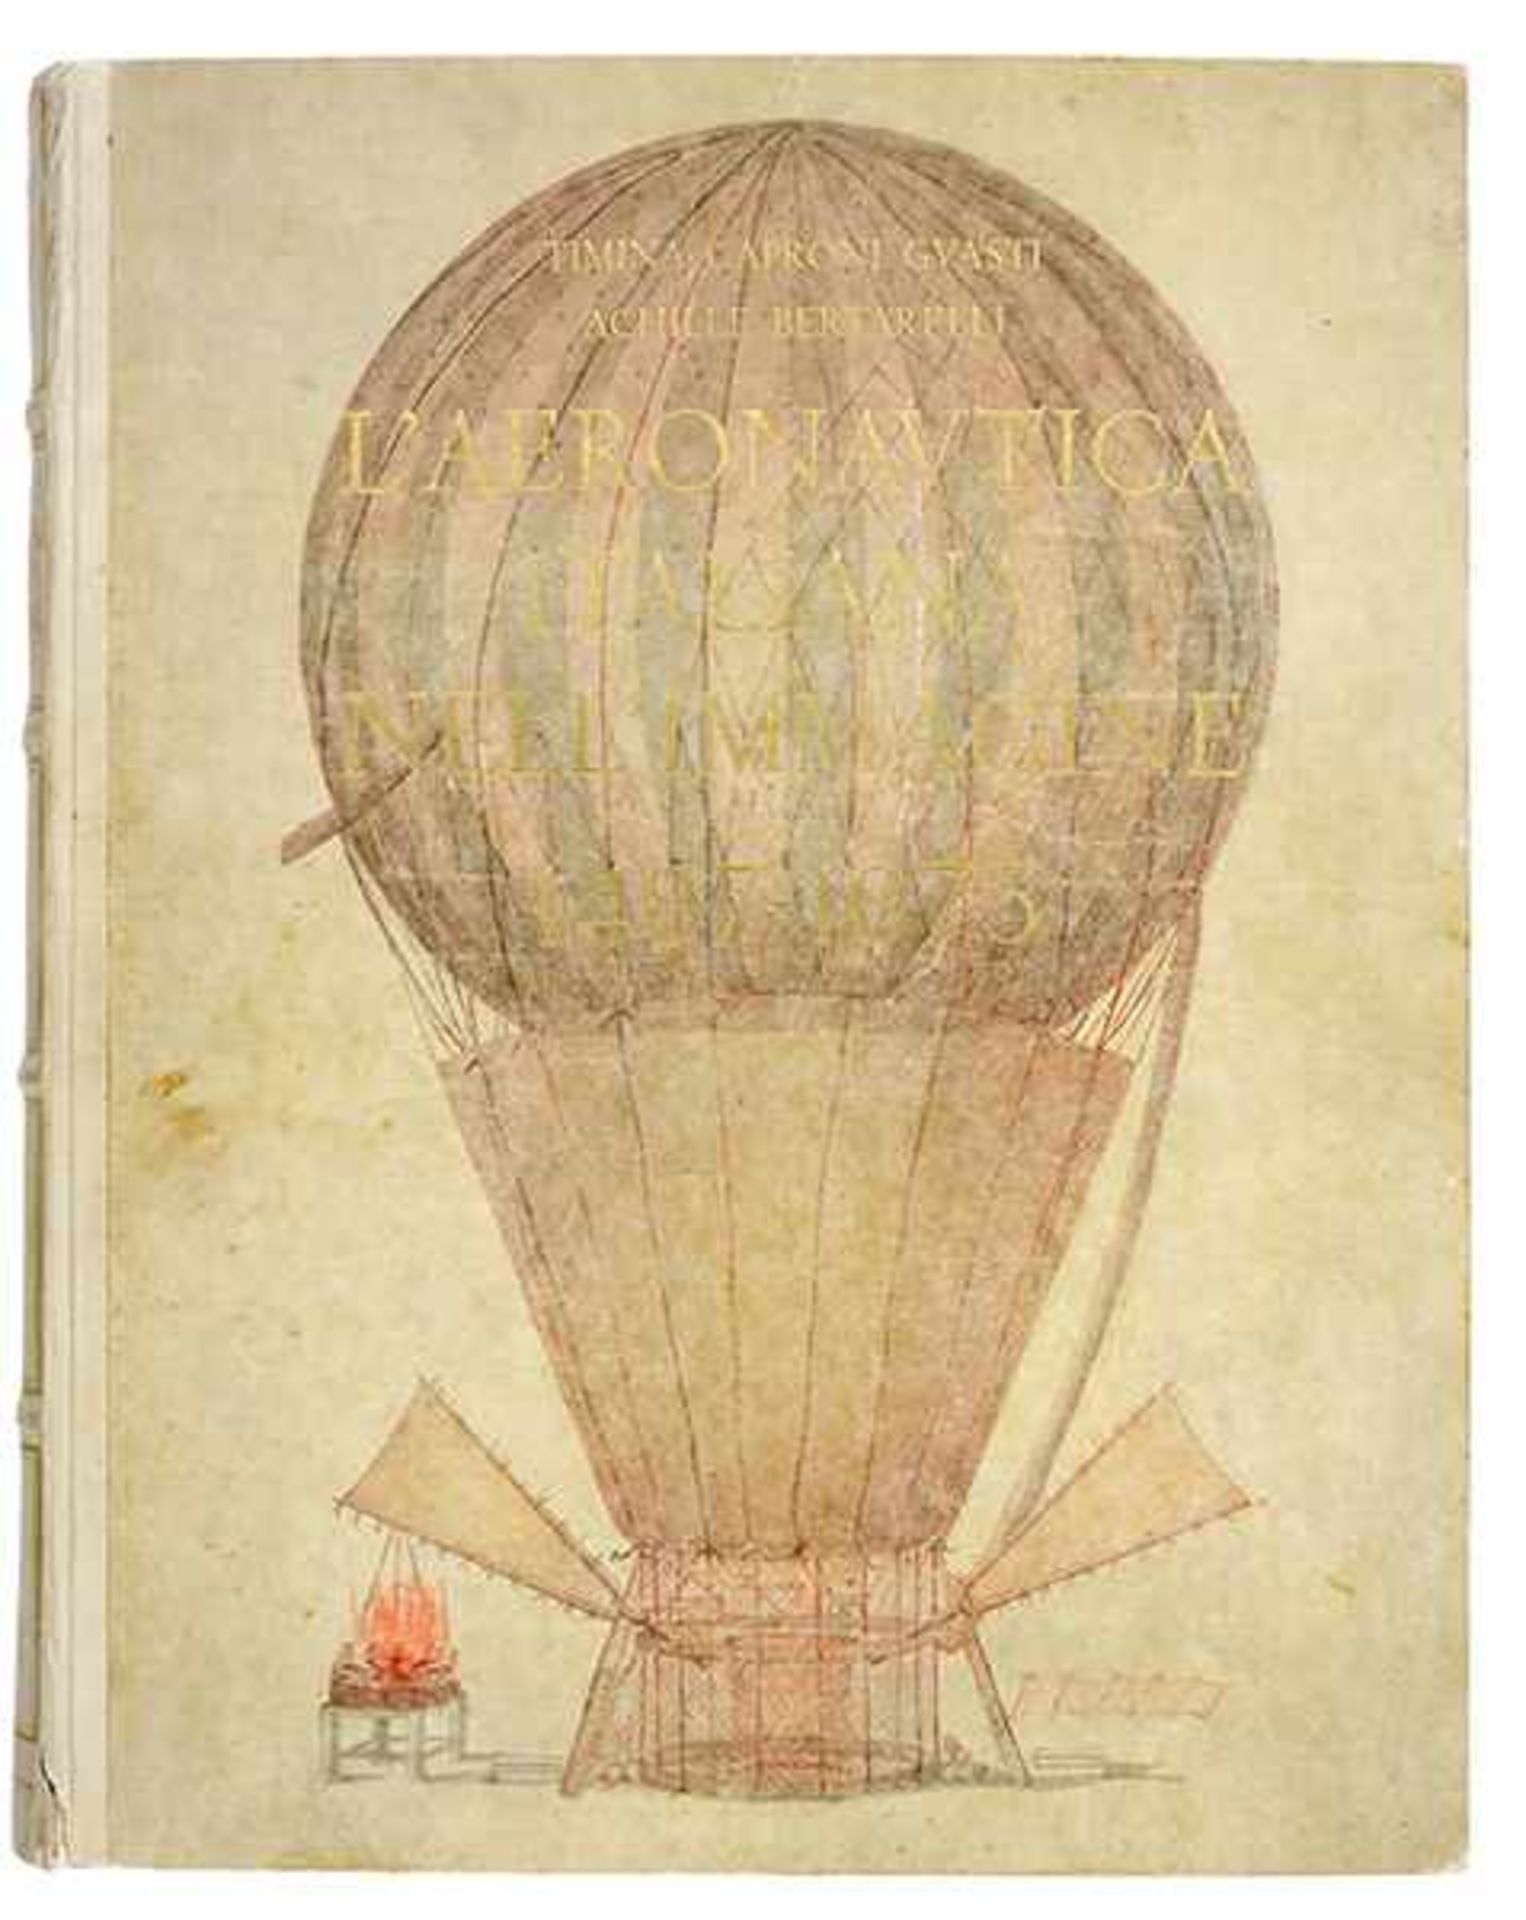 Technik - Luftfahrt - - Guasti, T. C. u. A. Bertarelli. L'Aeronautica italiana nell' immagine 1487-